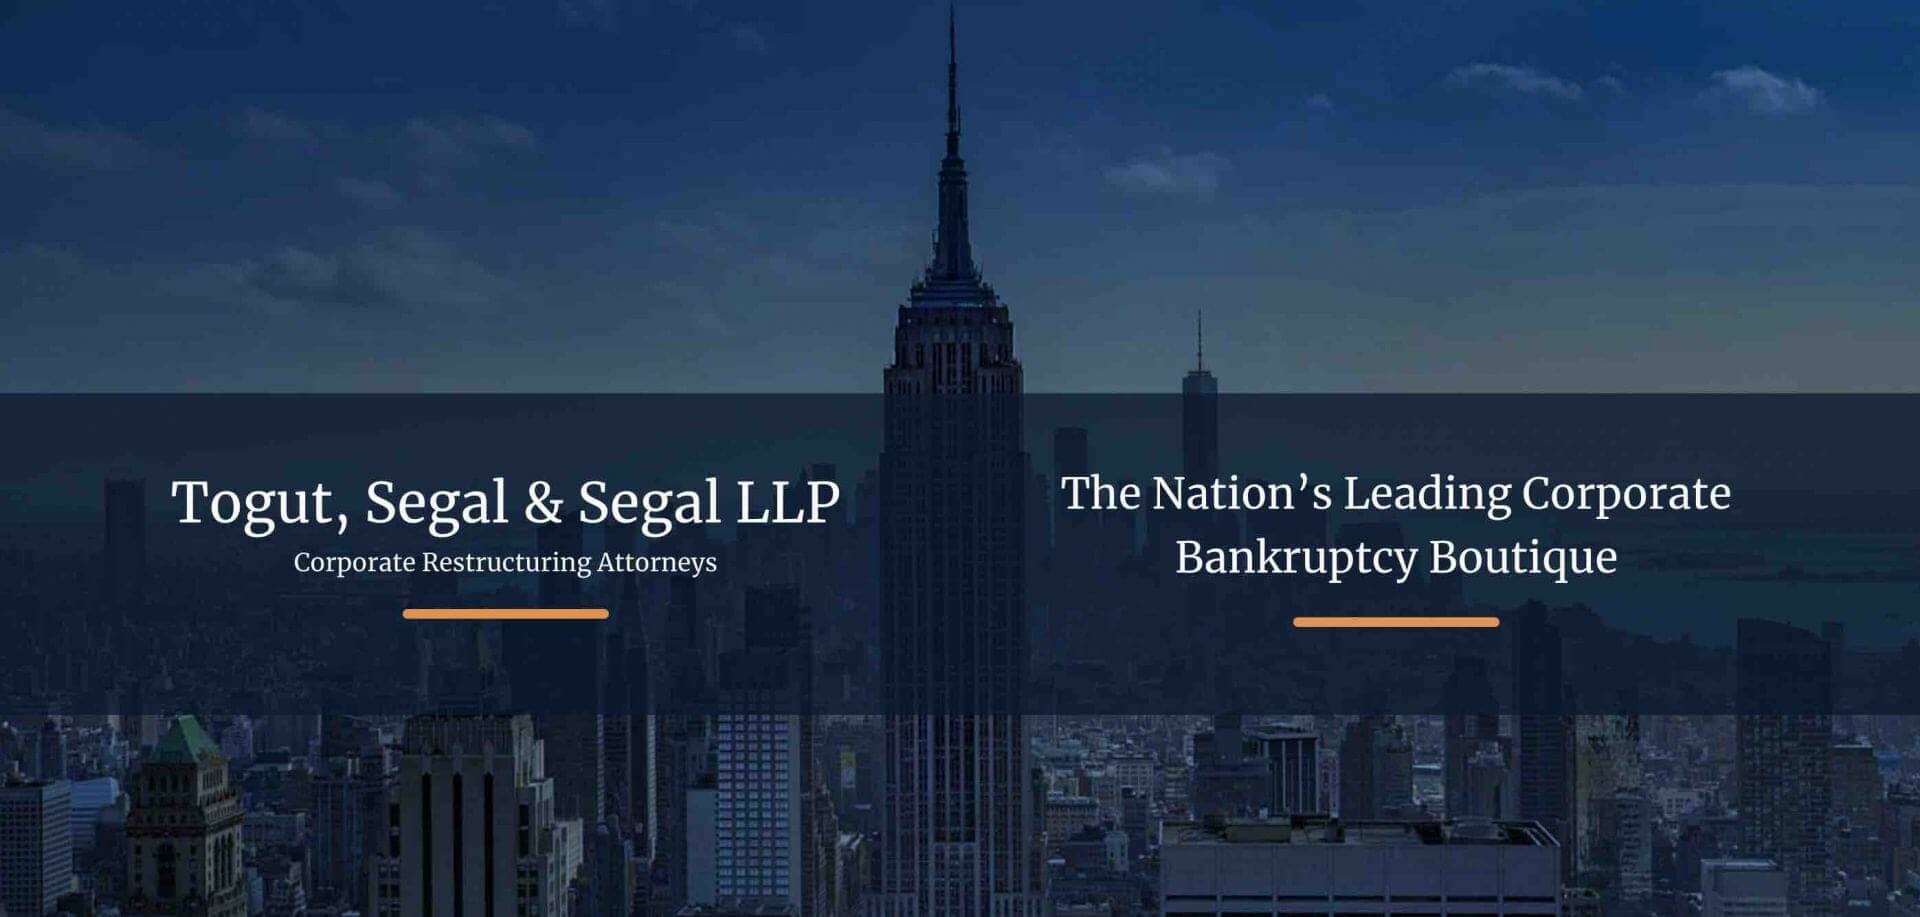 Togut, Segal & Segal LLP, avocat des requérants souhaitant récupérer 22,5 millions de dollars d'actifs